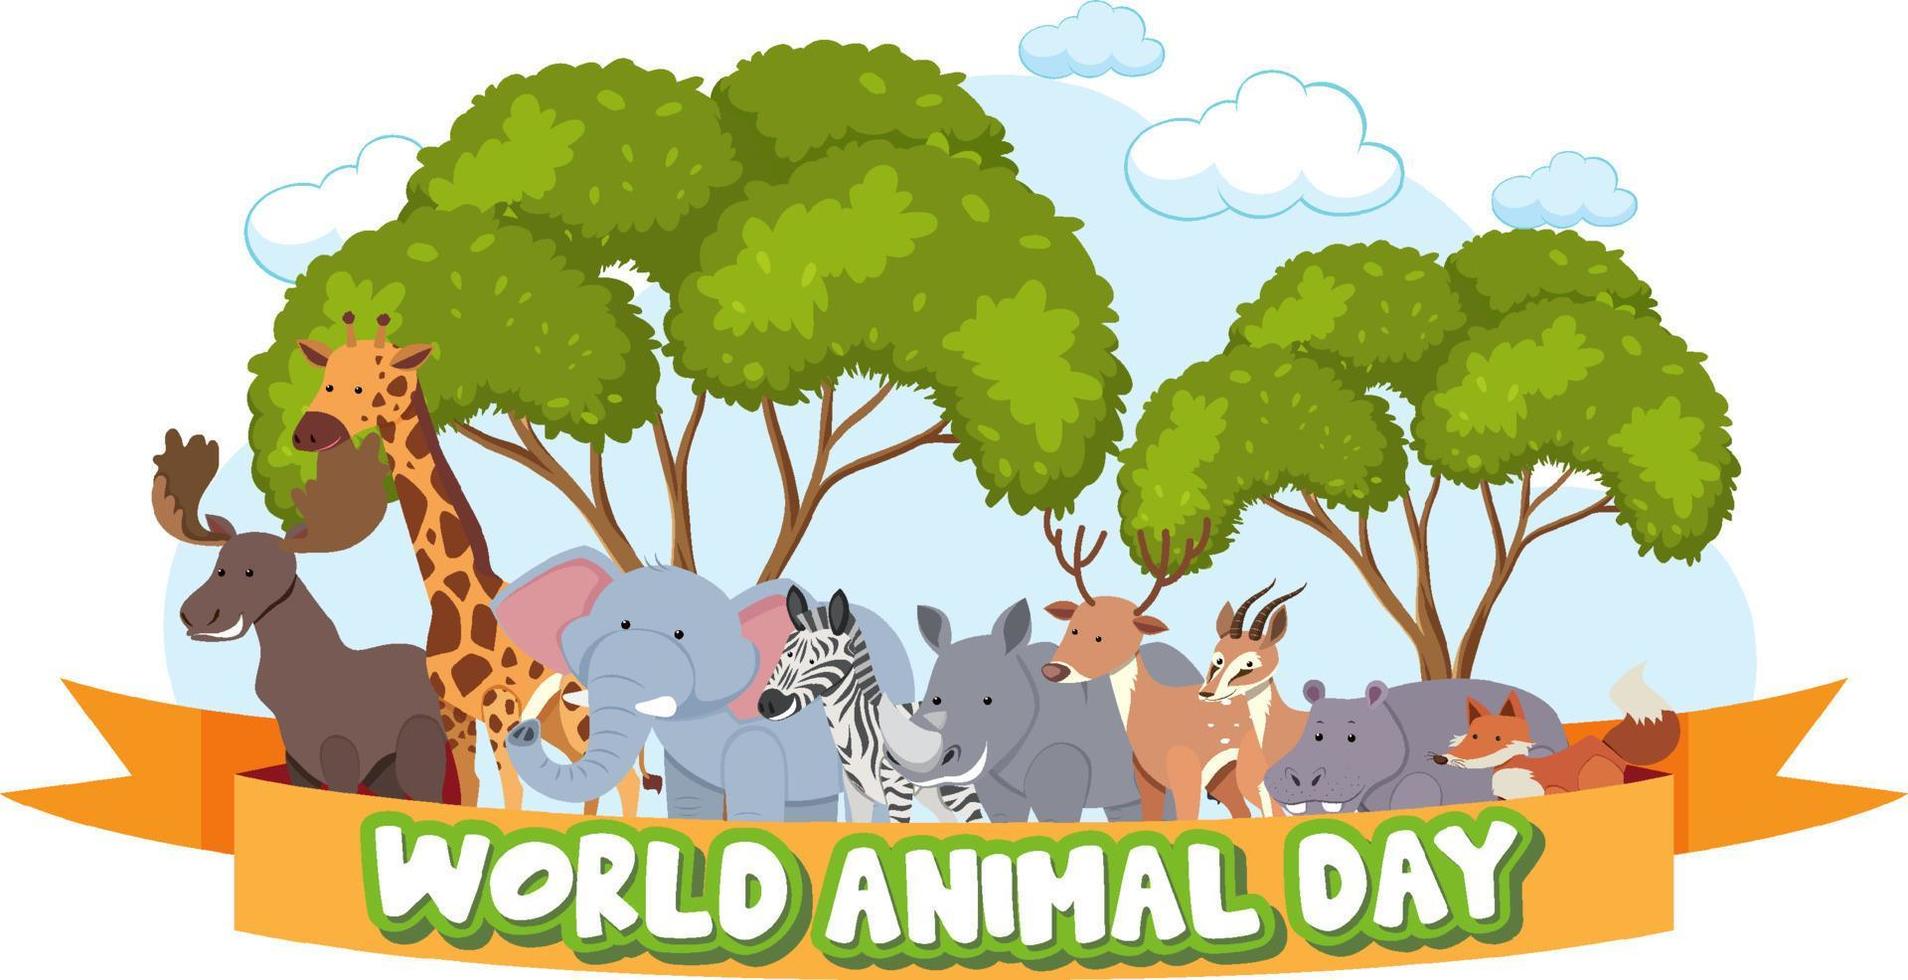 banner del día mundial de los animales con animales salvajes africanos vector